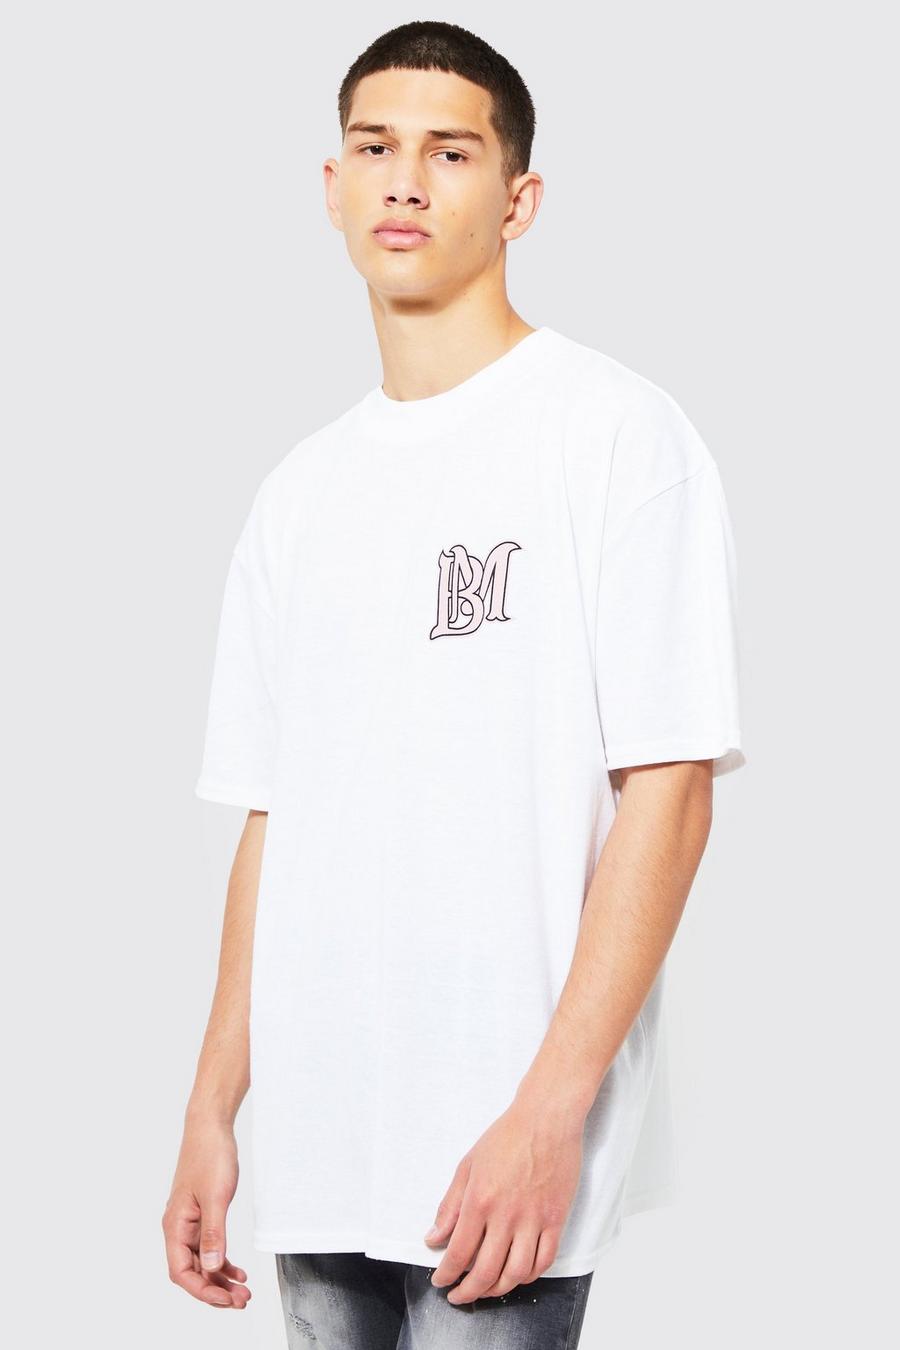 White Oversized Extended Neck Bm T-shirt